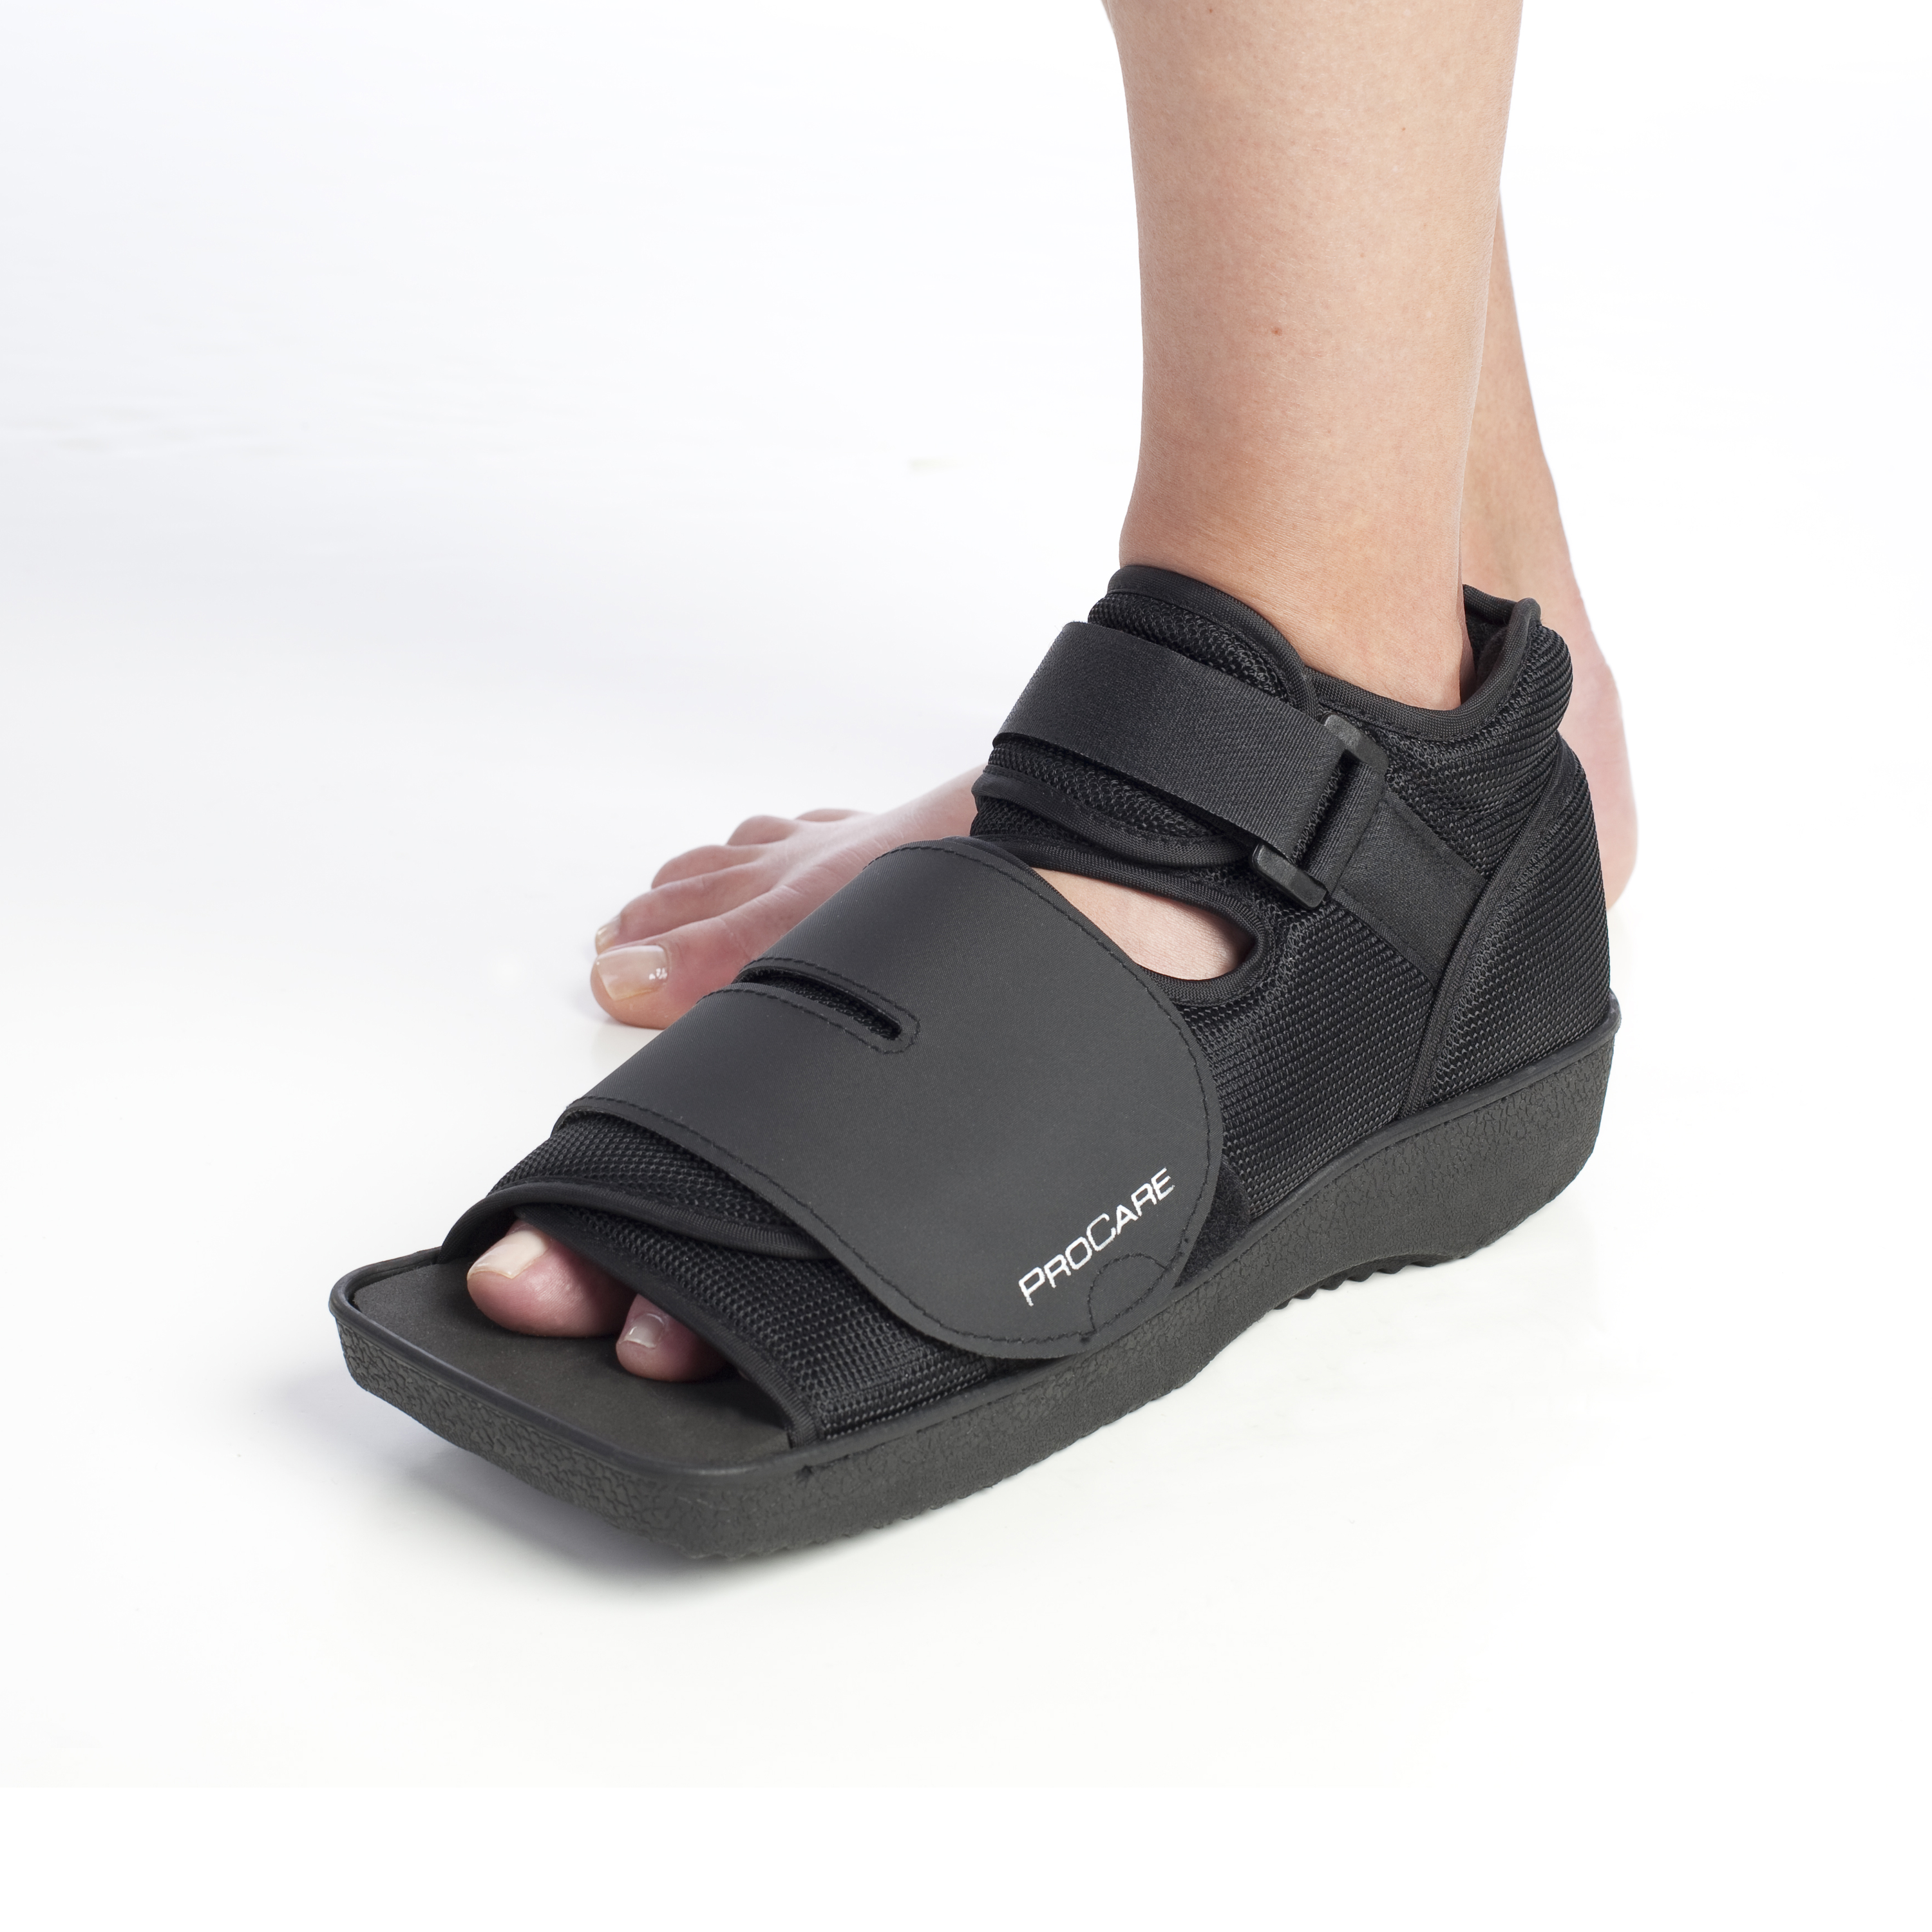 Zusatzbild PROCARE® Squared Toe mit Model, Verbandschuh für die Langzeittherapie